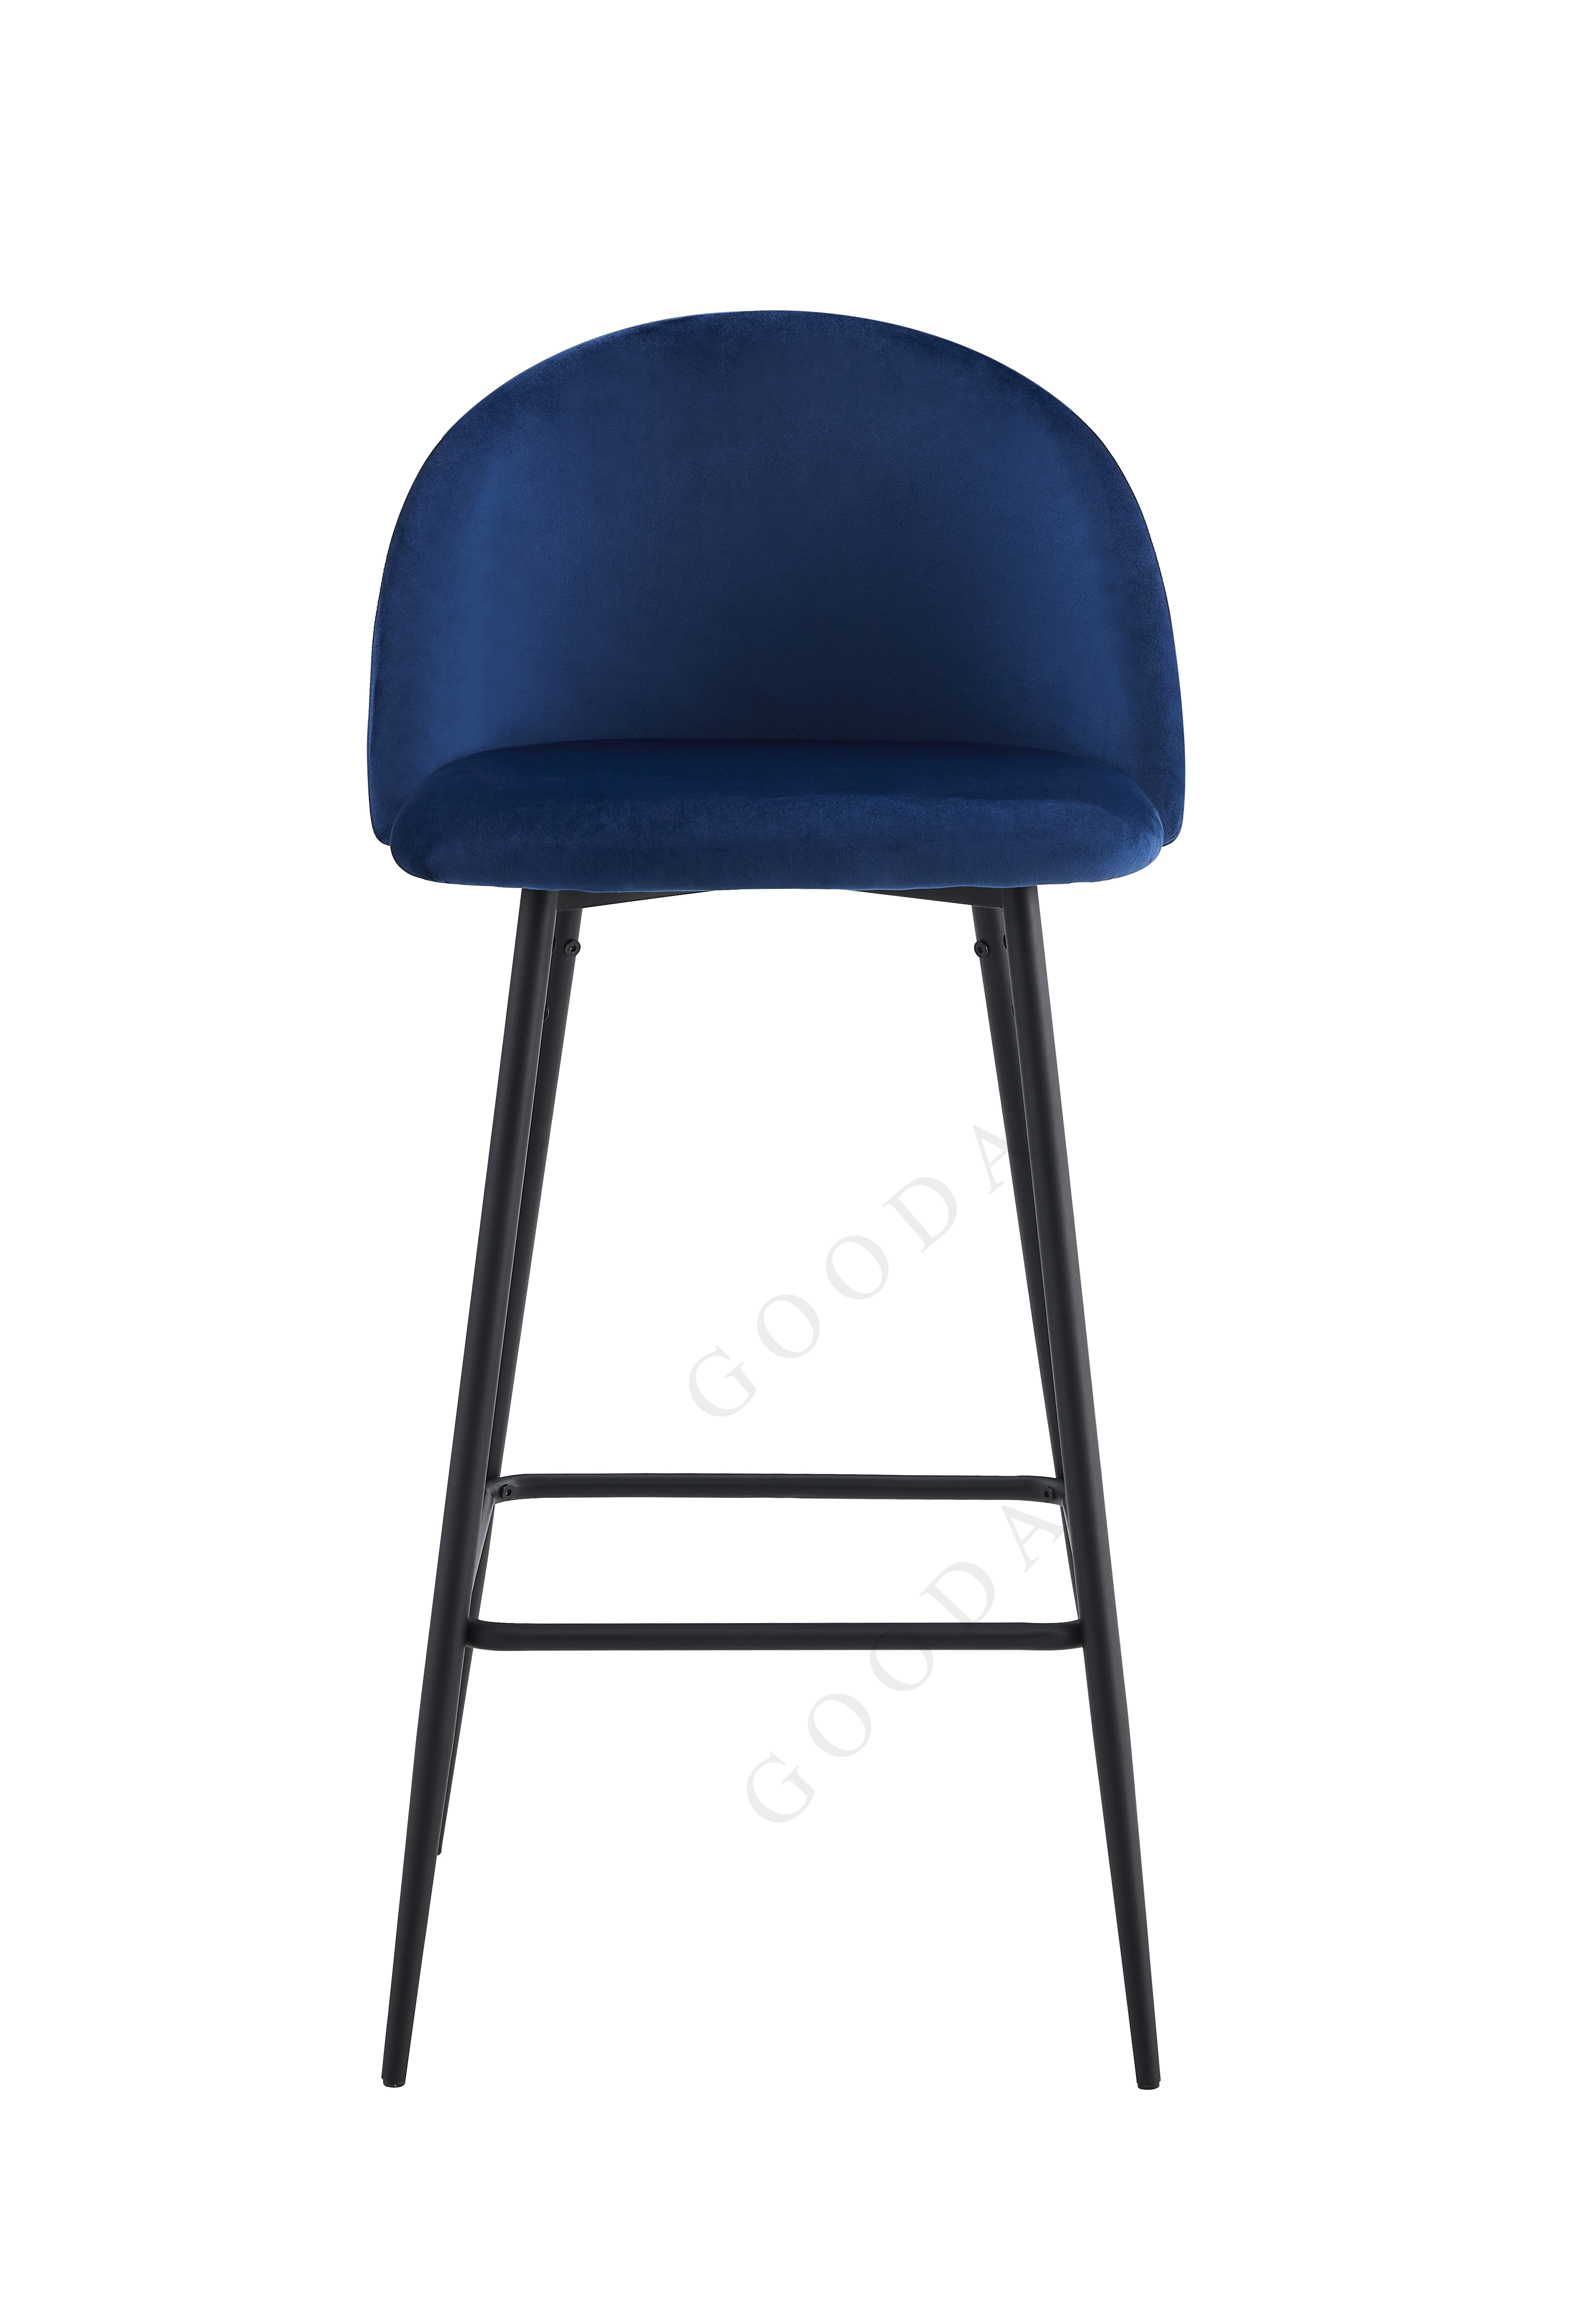 bar stool high chair modern metal BC-07